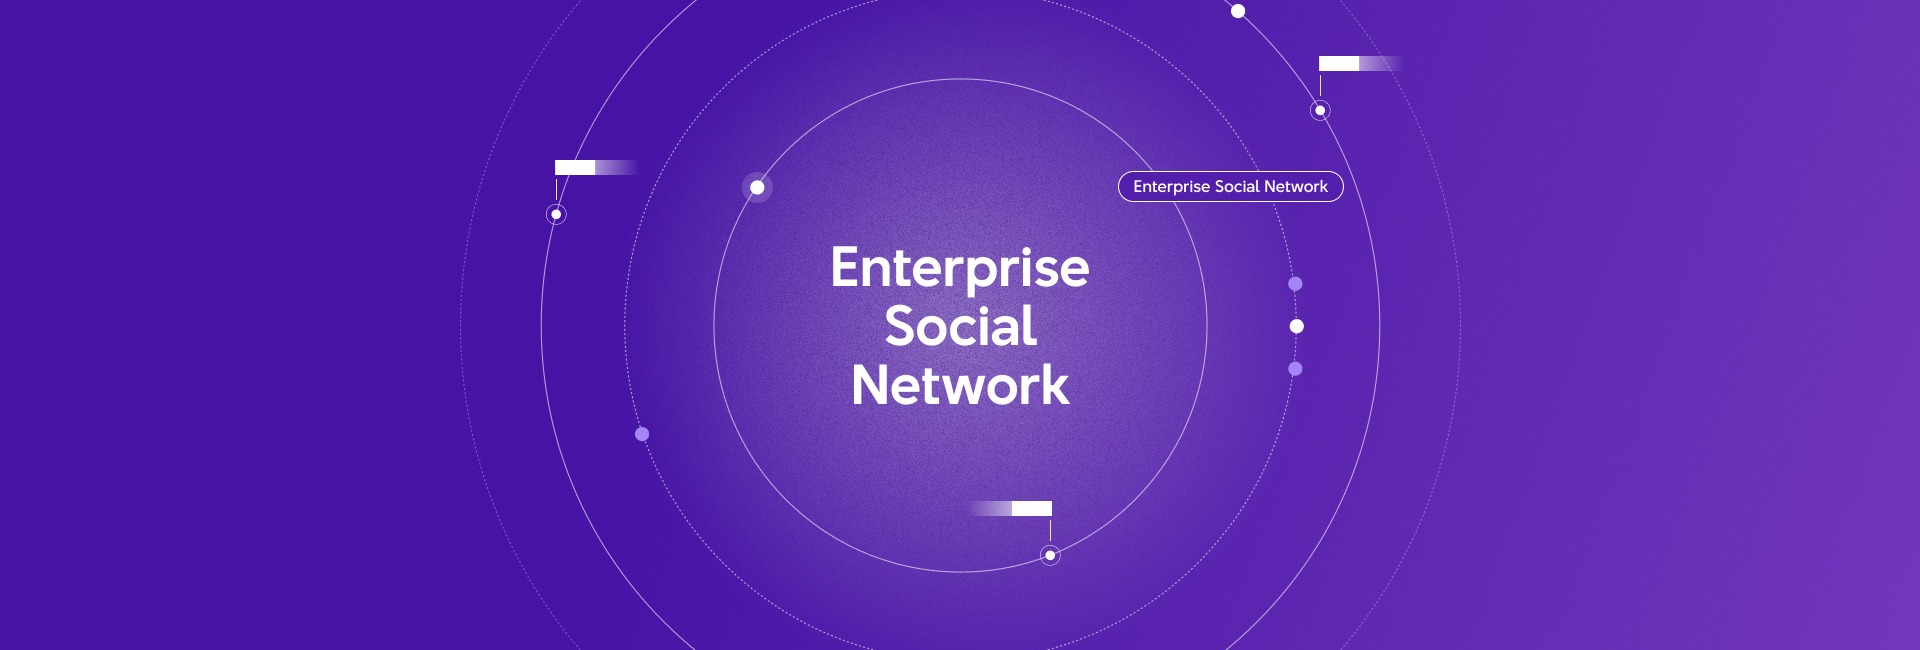 Phát triển mạng xã hội nội bộ cho doanh nghiệp để gia tăng hiệu suất làm việc